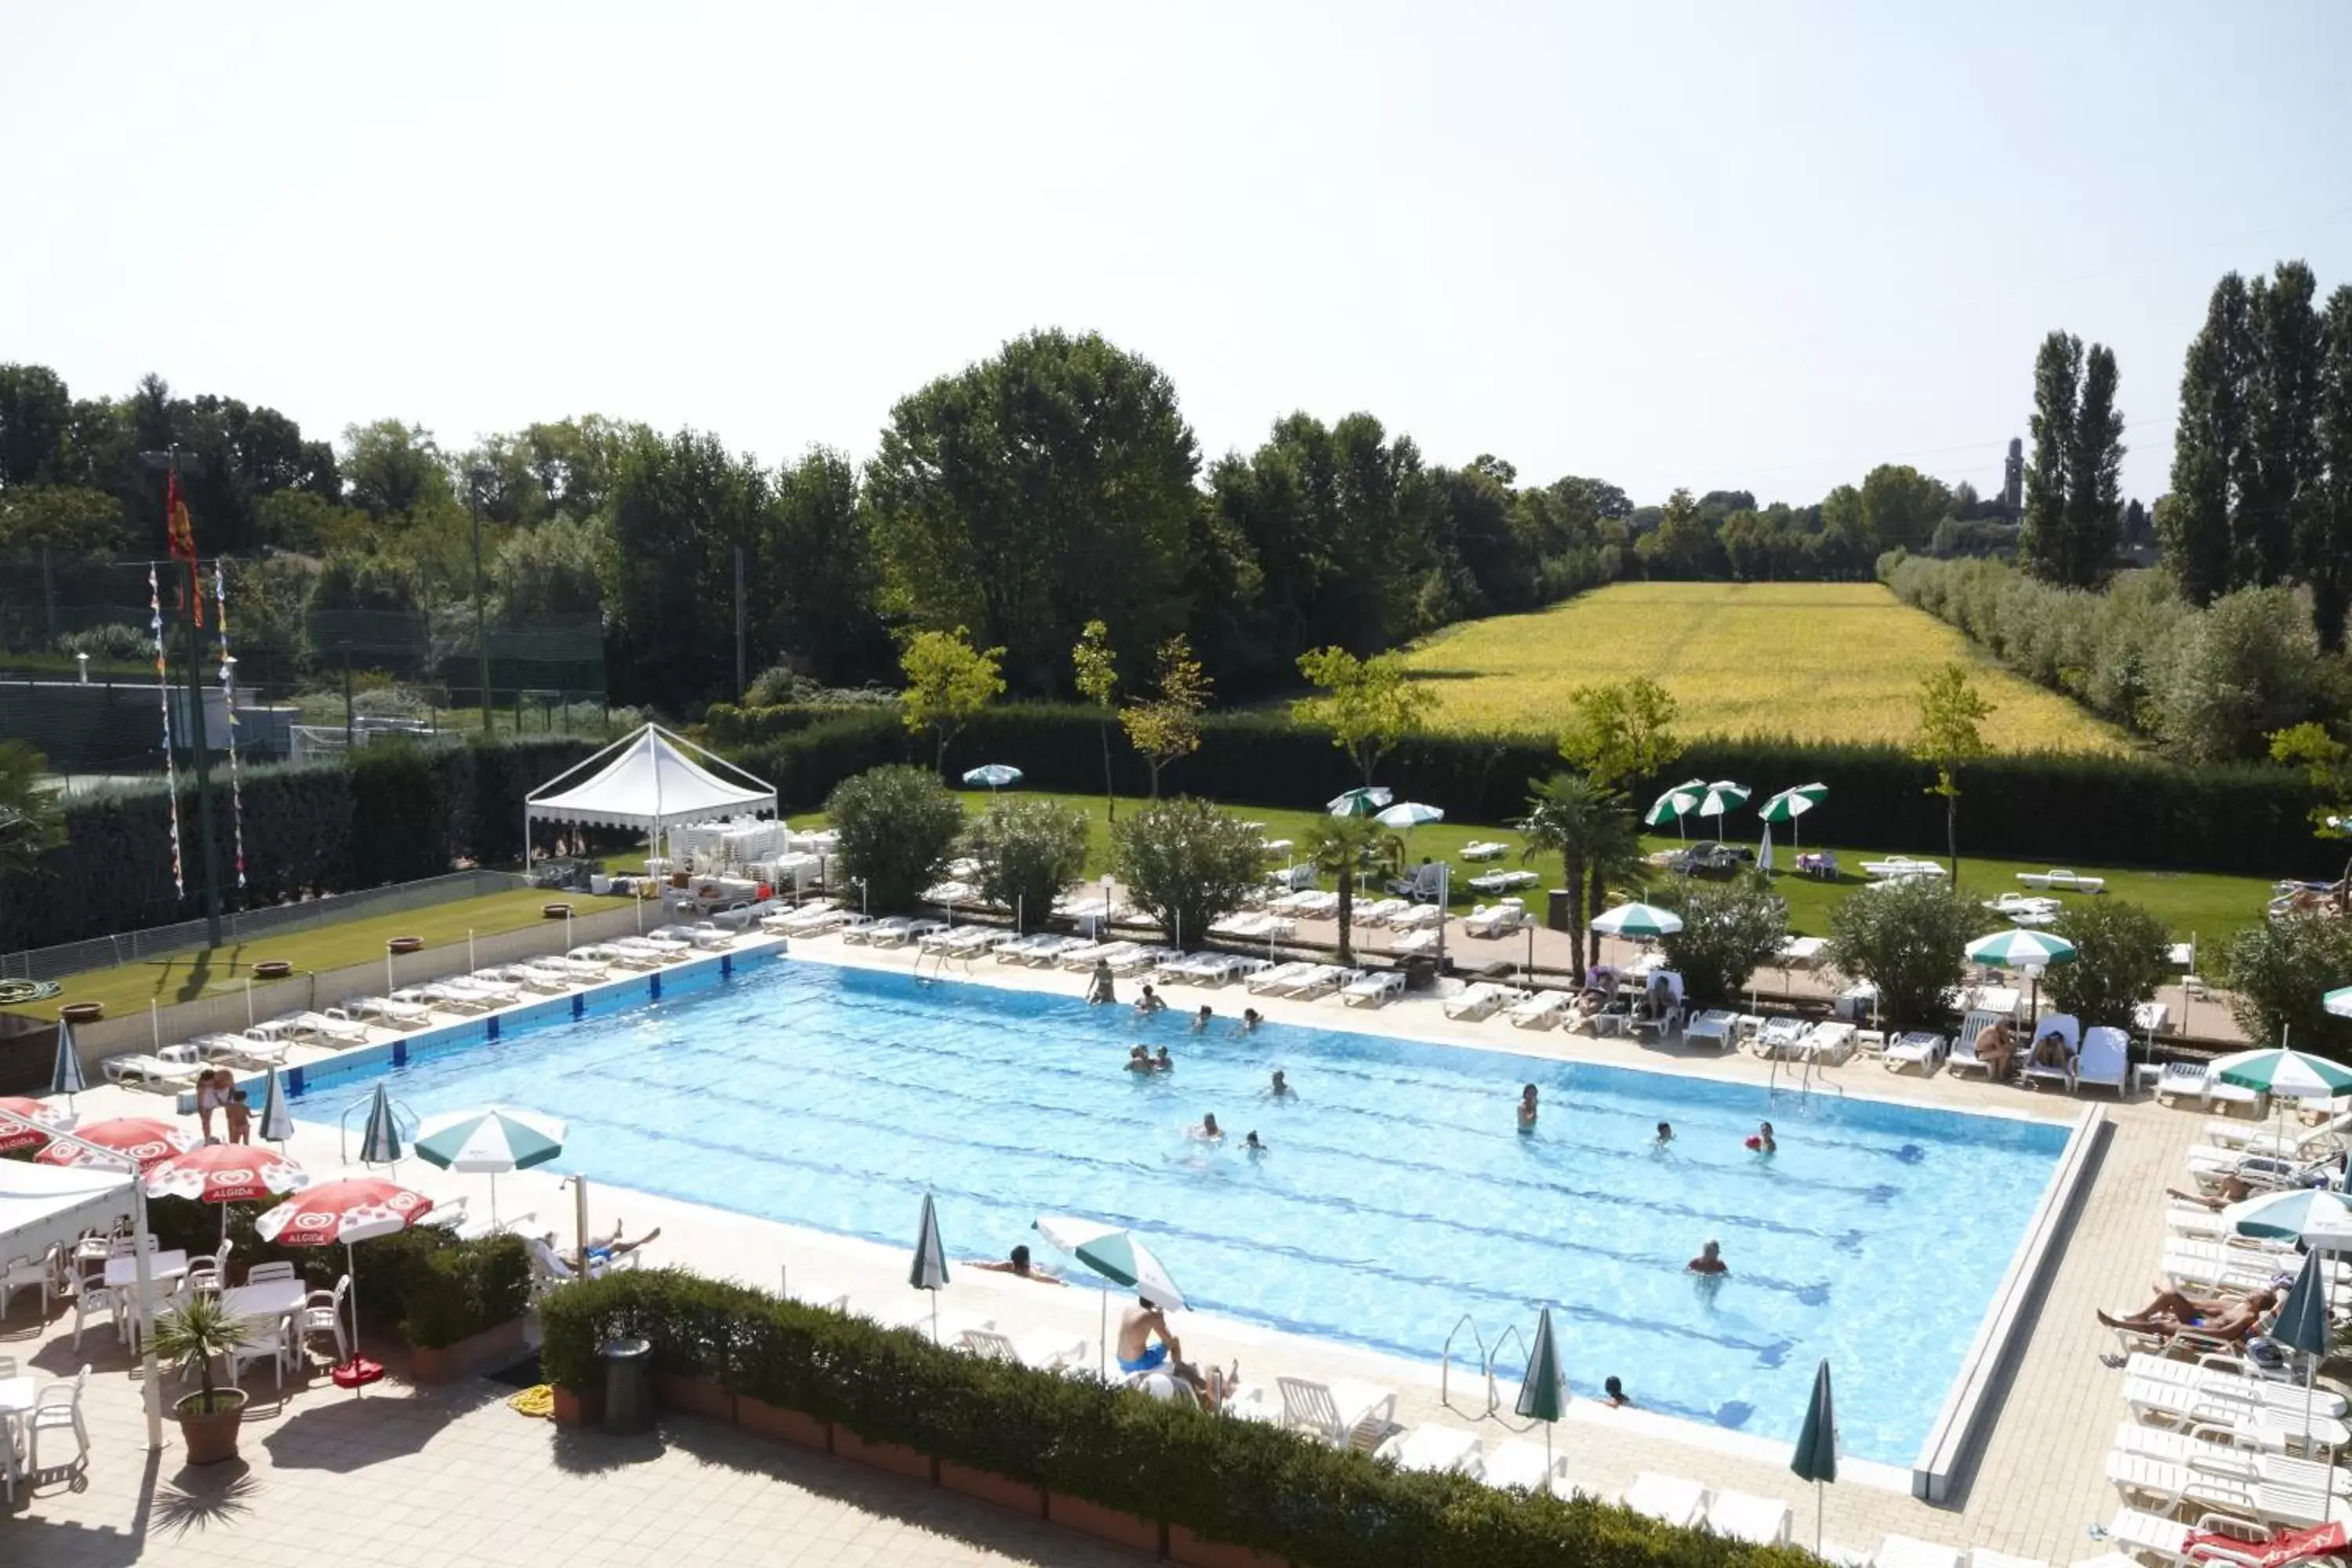 Pool View in GREEN GARDEN Resort - Smart Hotel